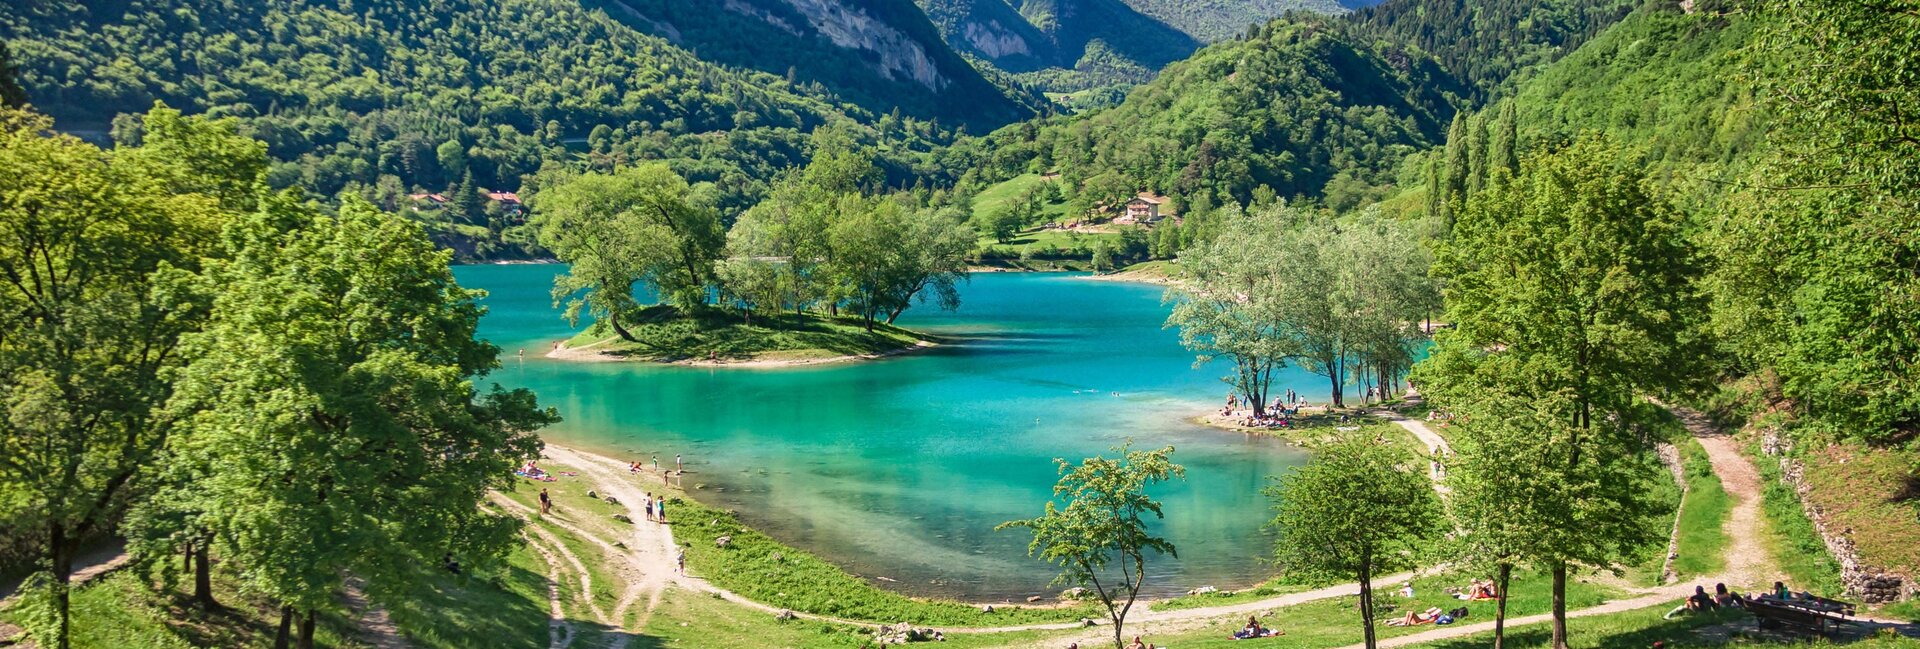 Vacanza al lago di Tenno, vicino allago di Garda 